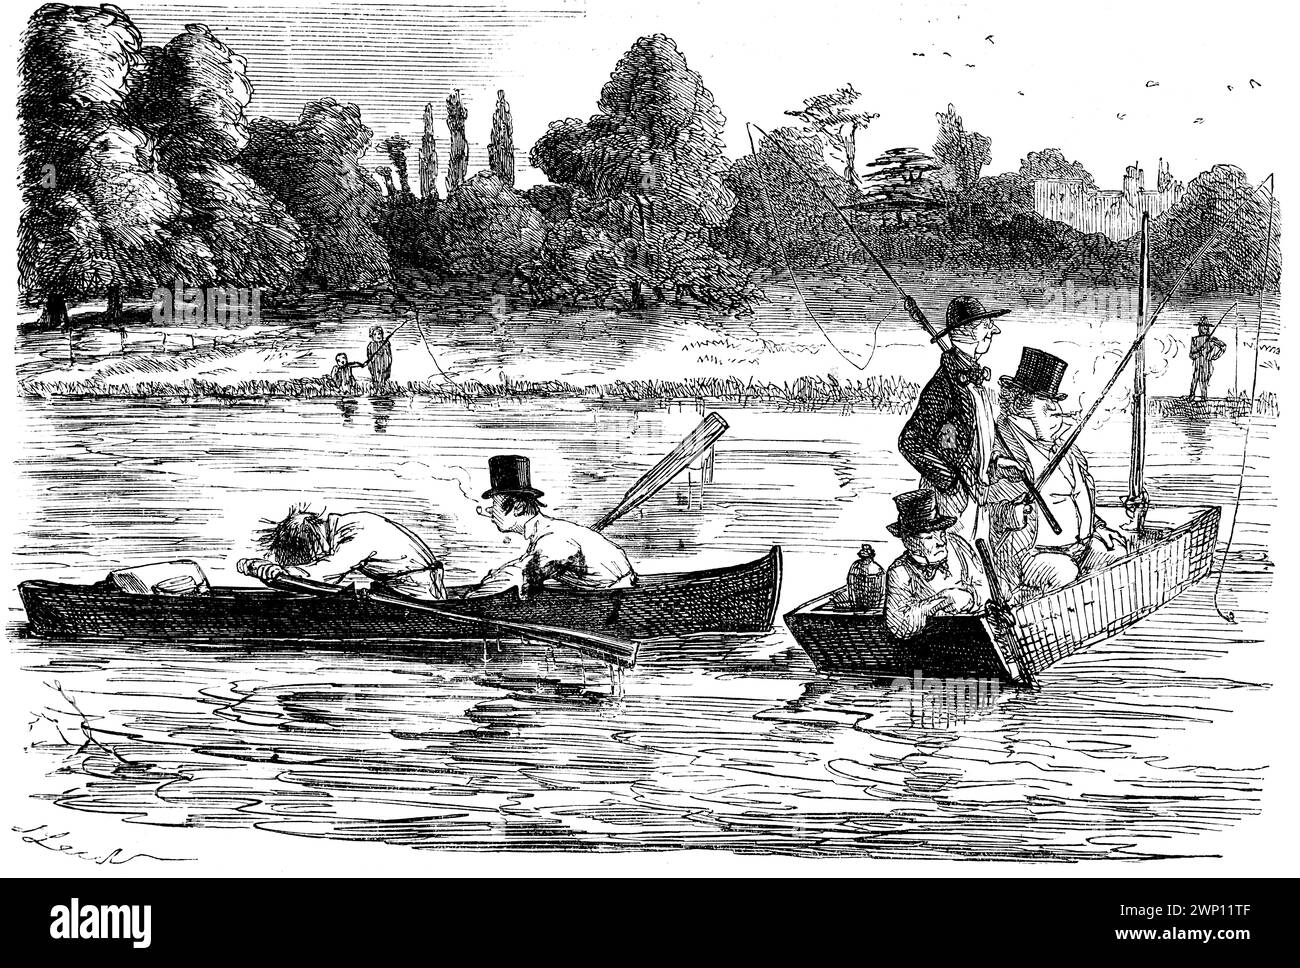 Je ne me soucie pas tellement du sport, c’est le délicieux repos que j’aime tellement, dessin animé de pêche par John Leech, de 1852 Punch Magazine Banque D'Images